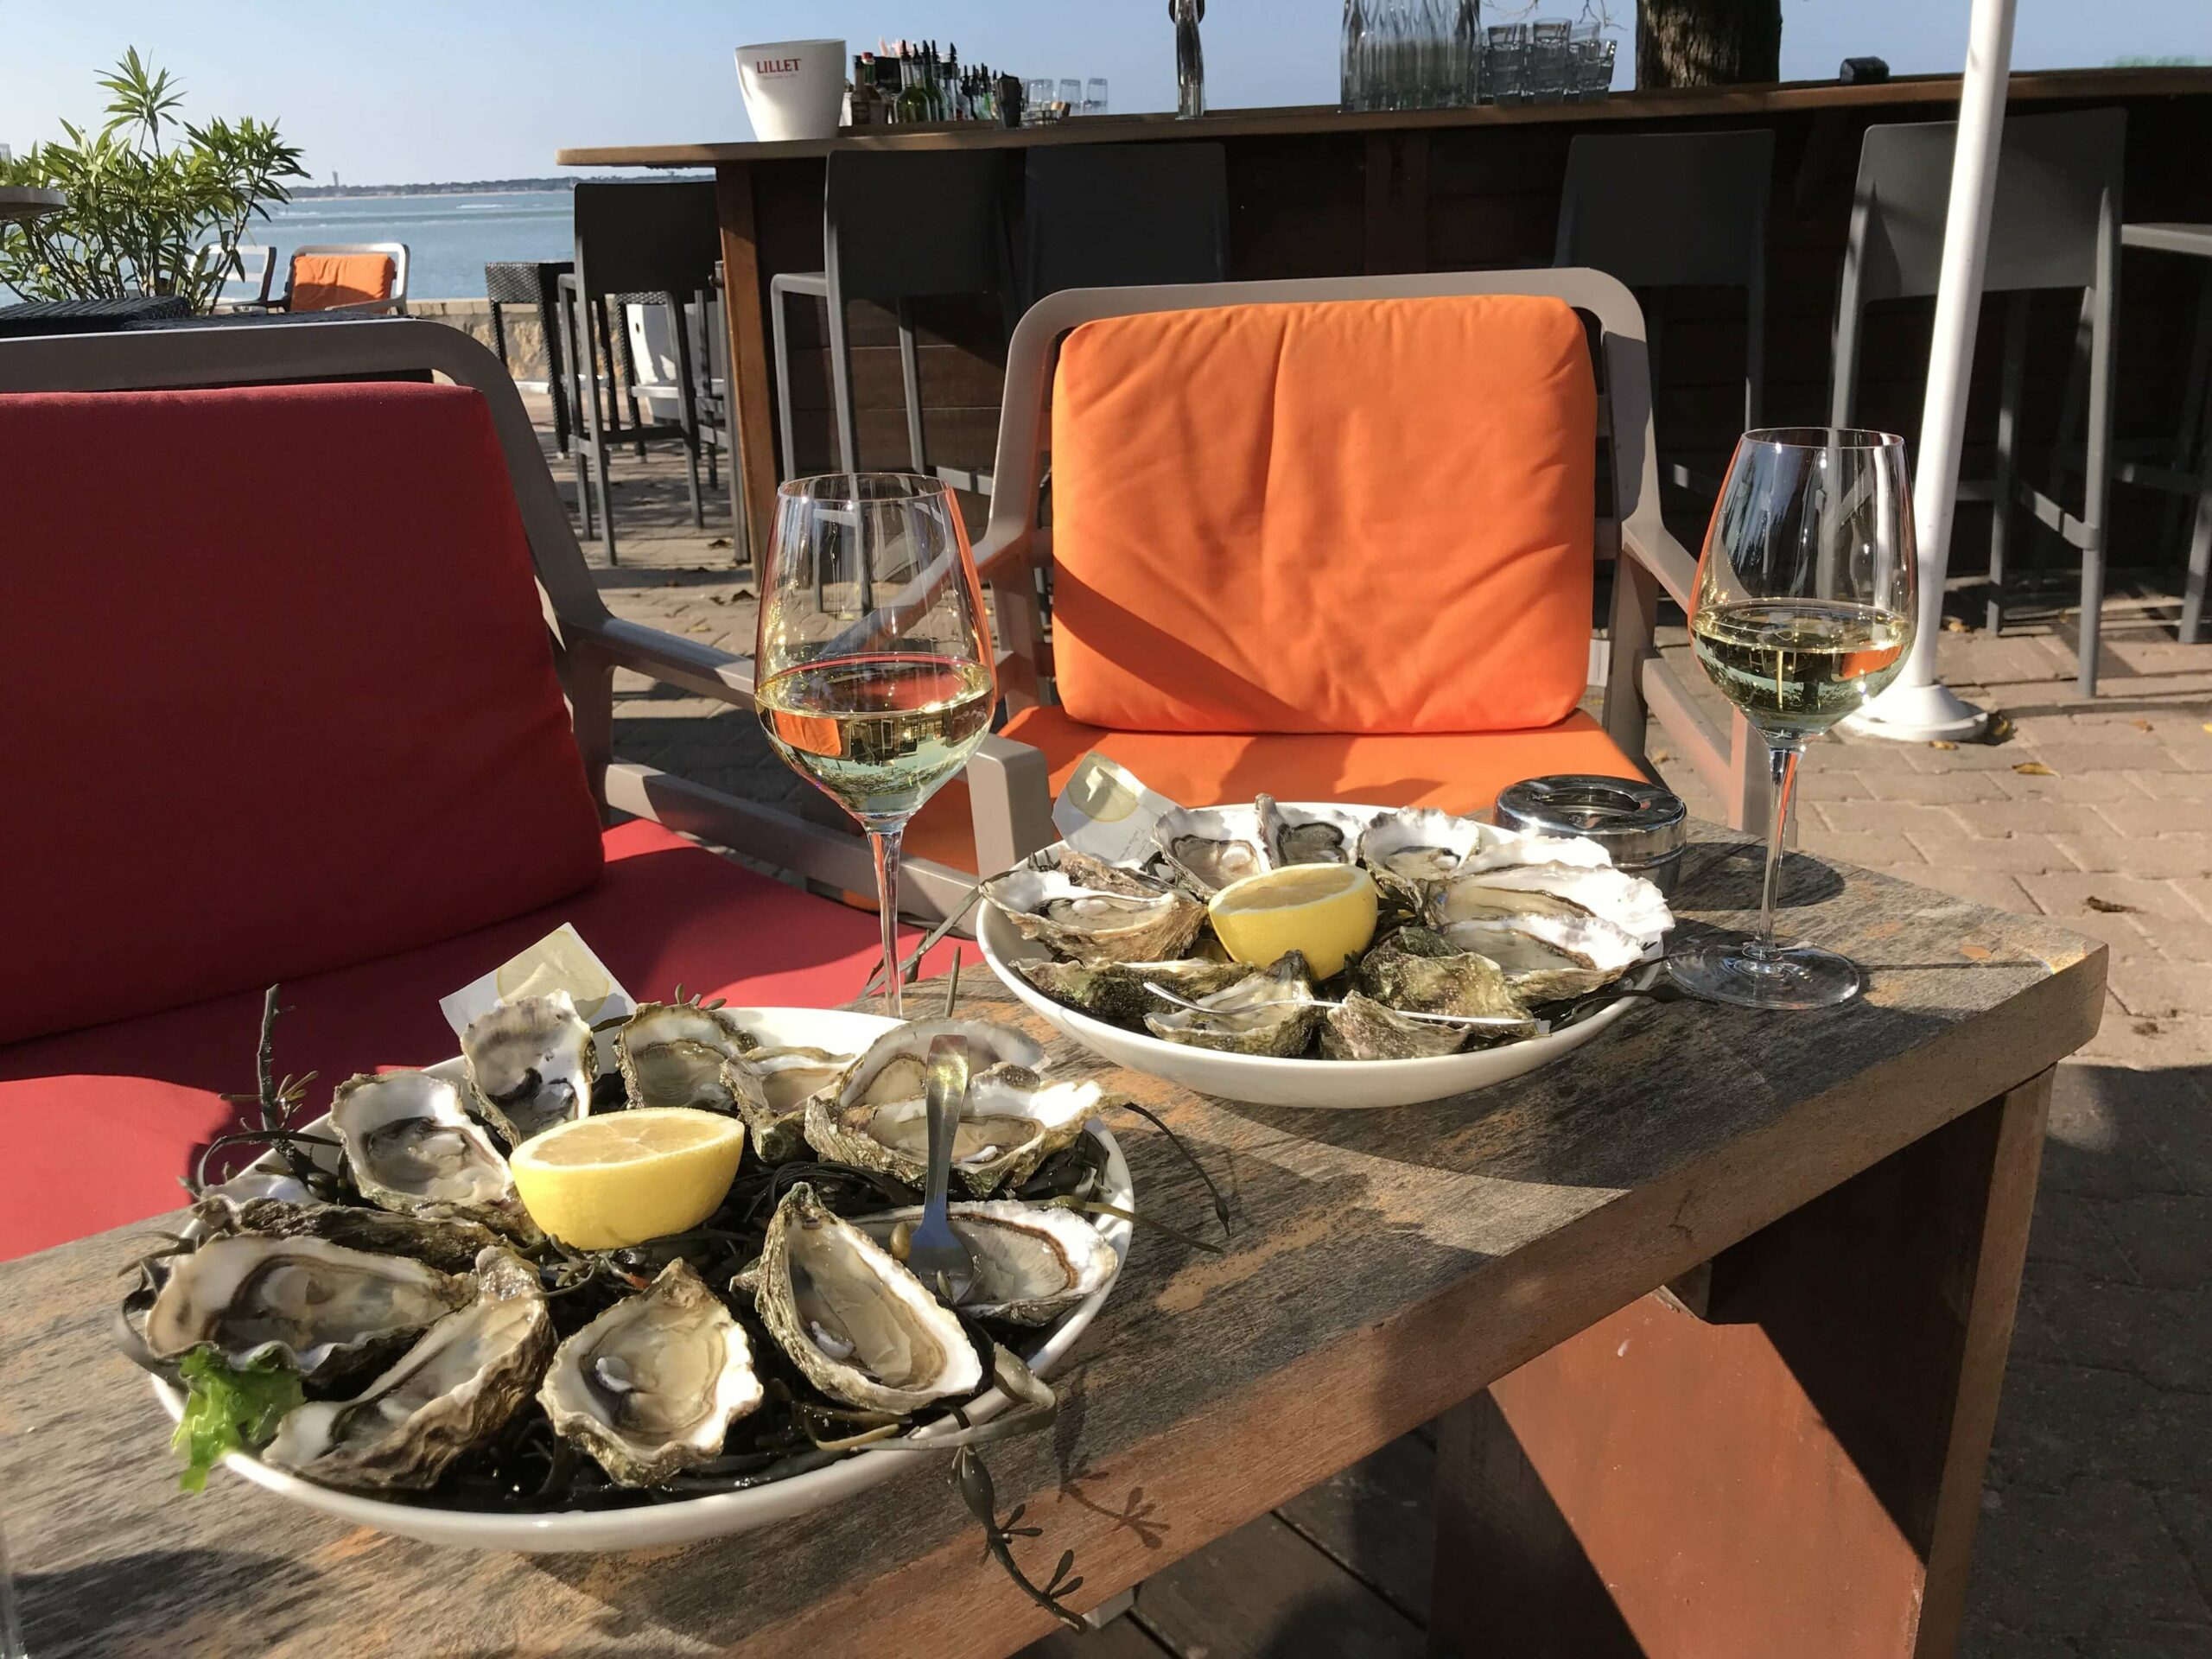 Table pour deux personnes près de la mer, avec deux verres de vins, et deux plateaux d'huitres